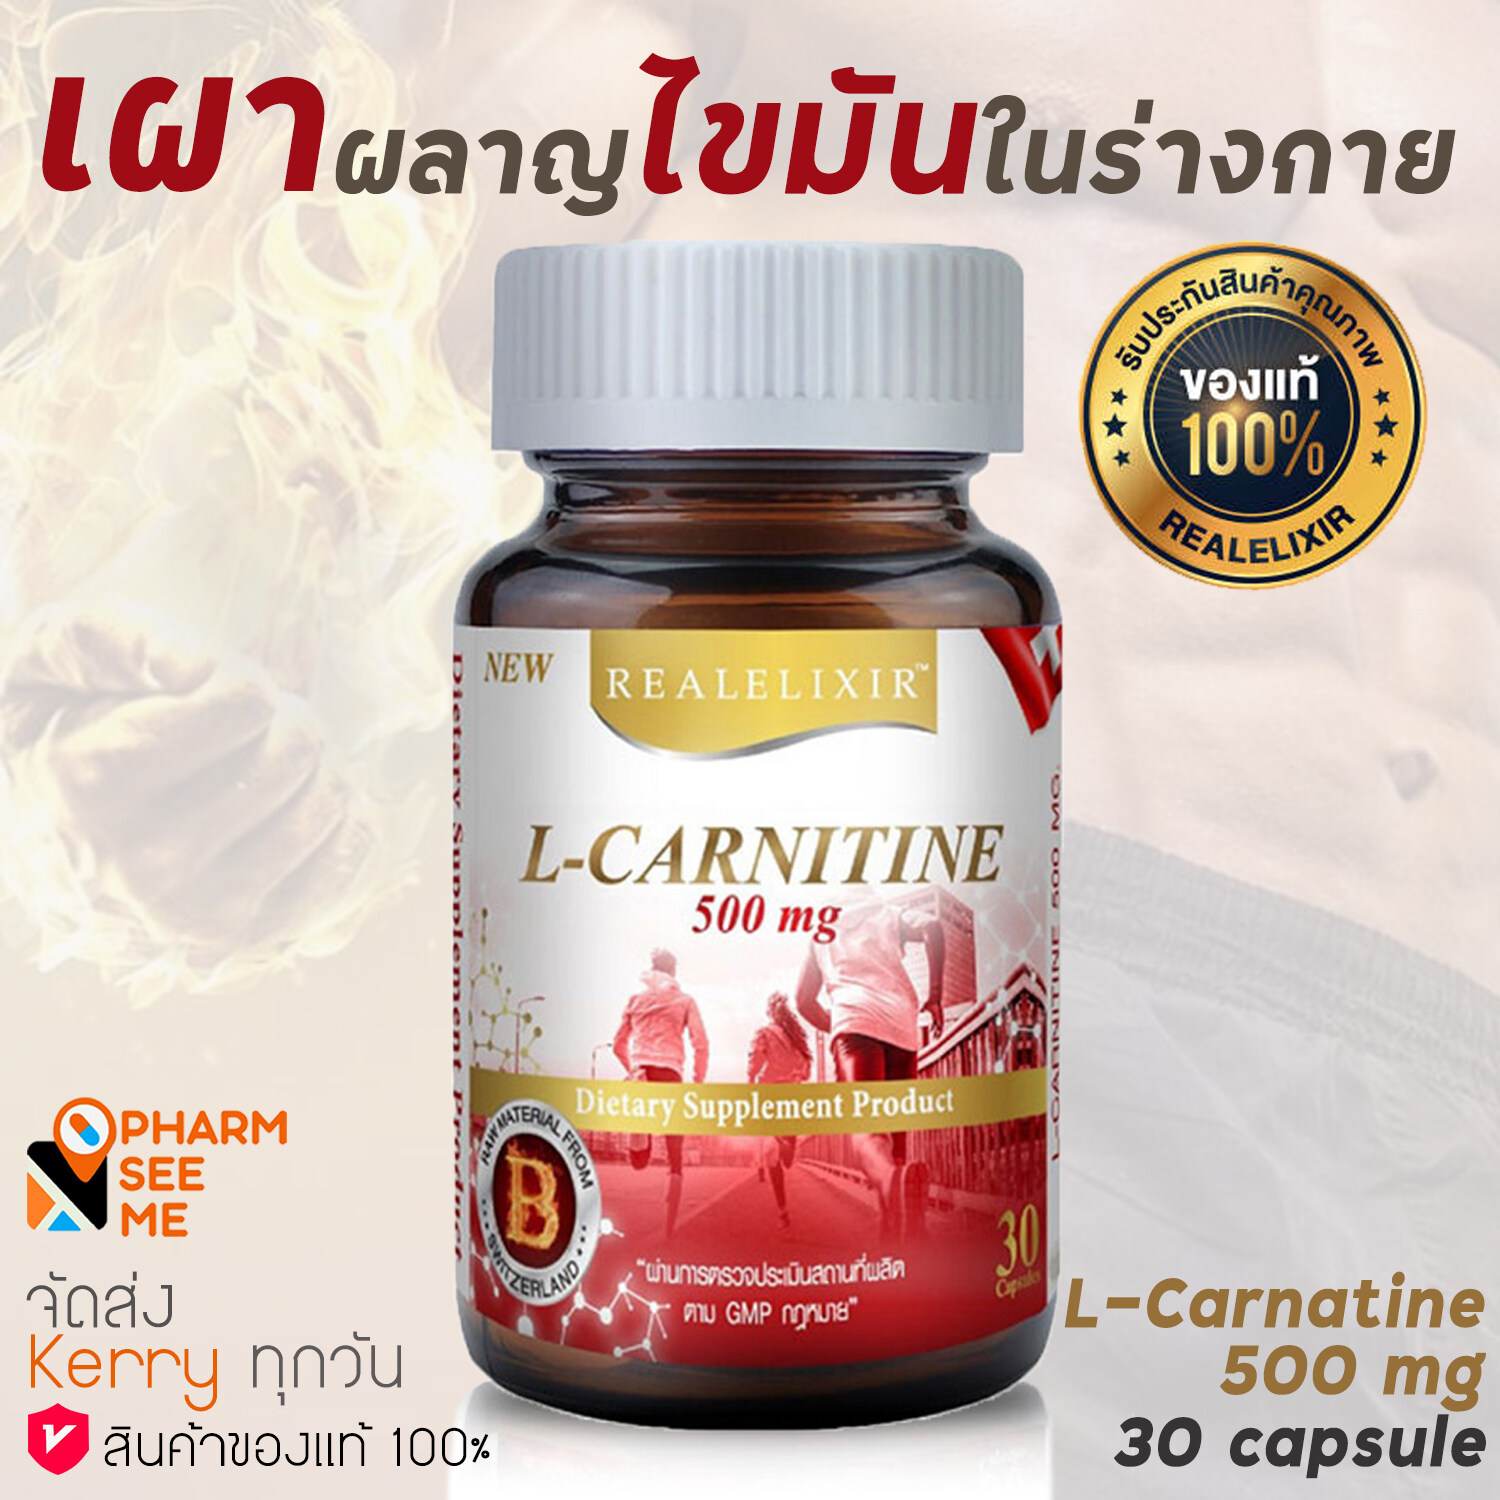 Real Elixir L-CARNITINE 500 mg. 30 แคปซูล แอล-คาร์นิทีน อาหารเสริมเผาผลาญไขมัน